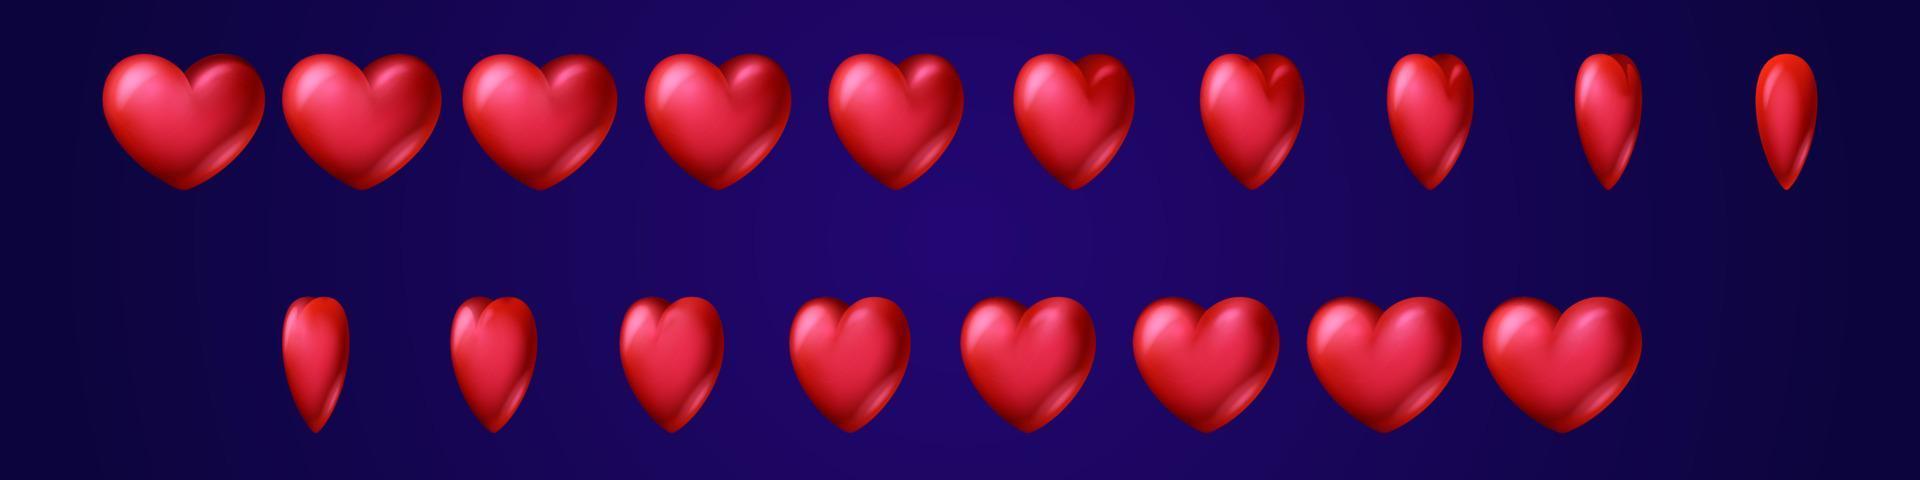 folha de sprite de animação de jogo de virada de coração vermelho vetor